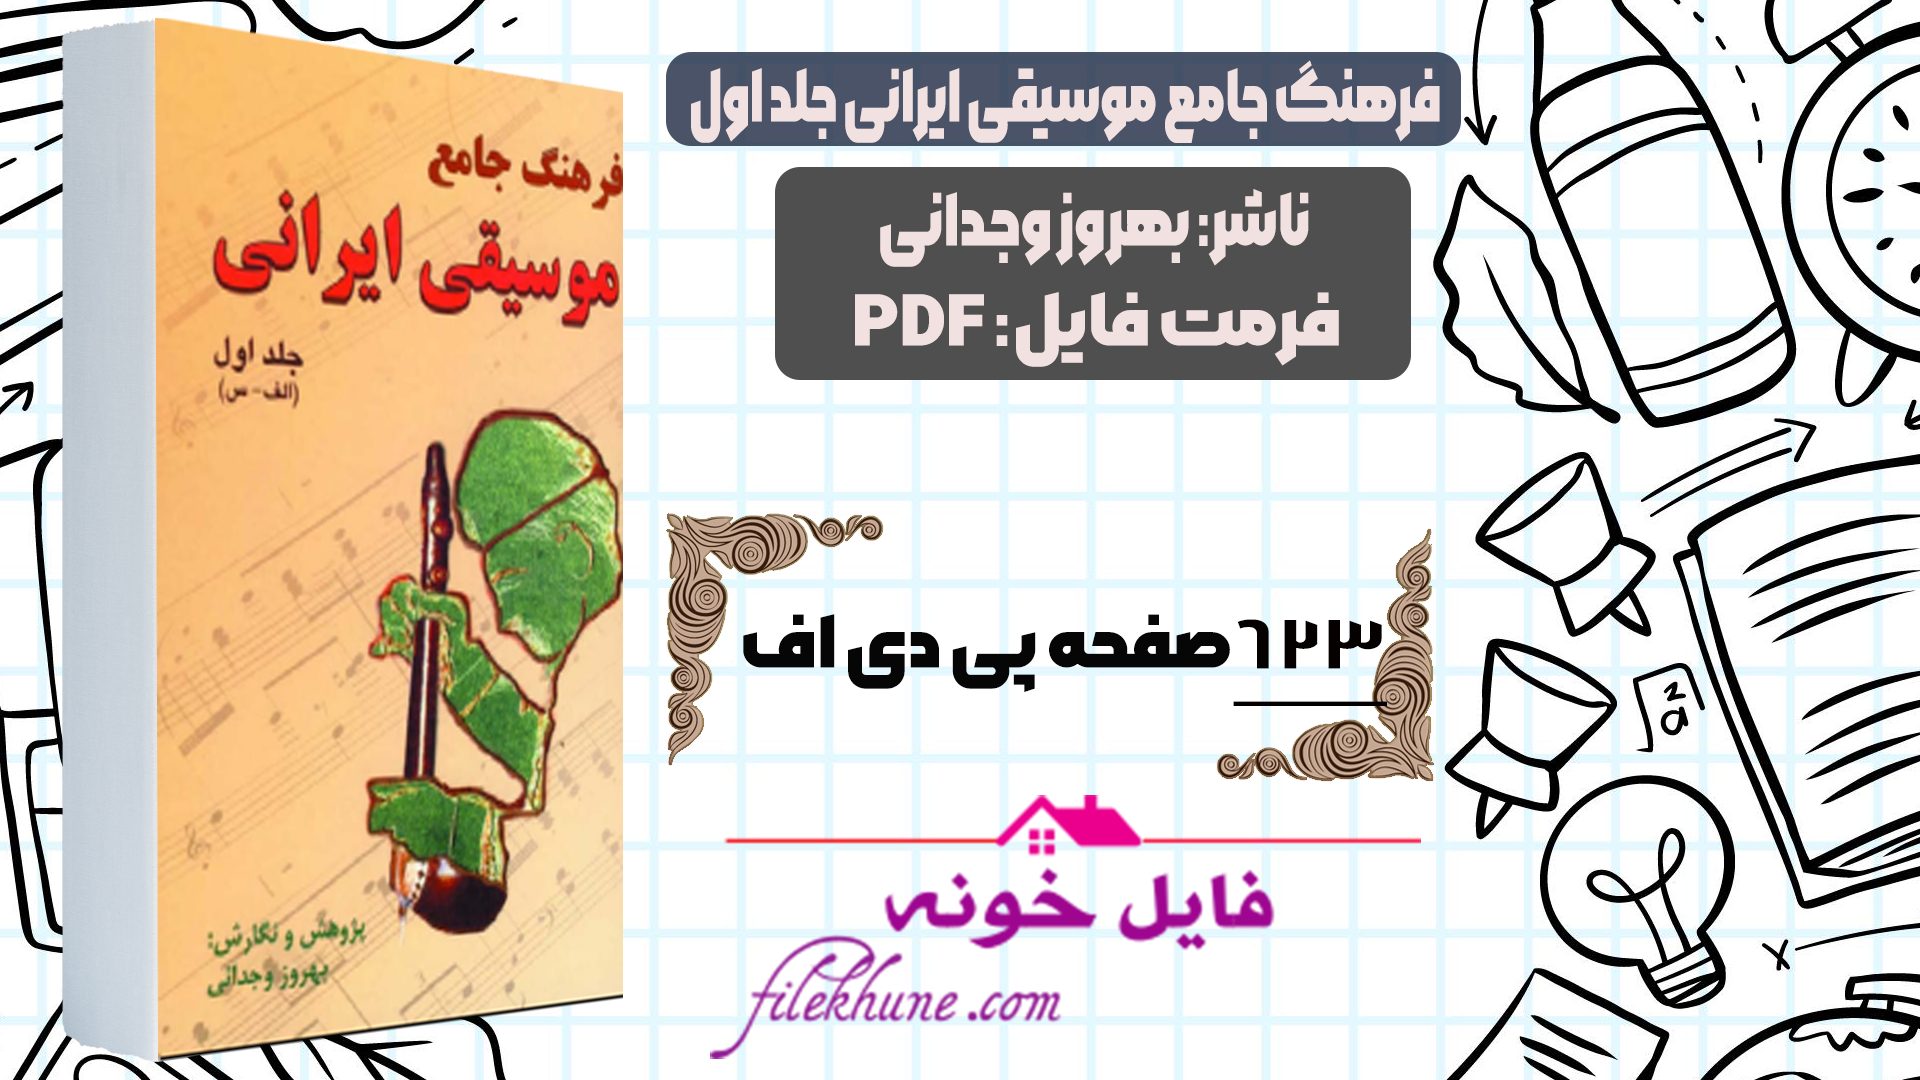 دانلود کتاب فرهنگ جامع موسیقی ایرانی بهروز وجدانی PDF